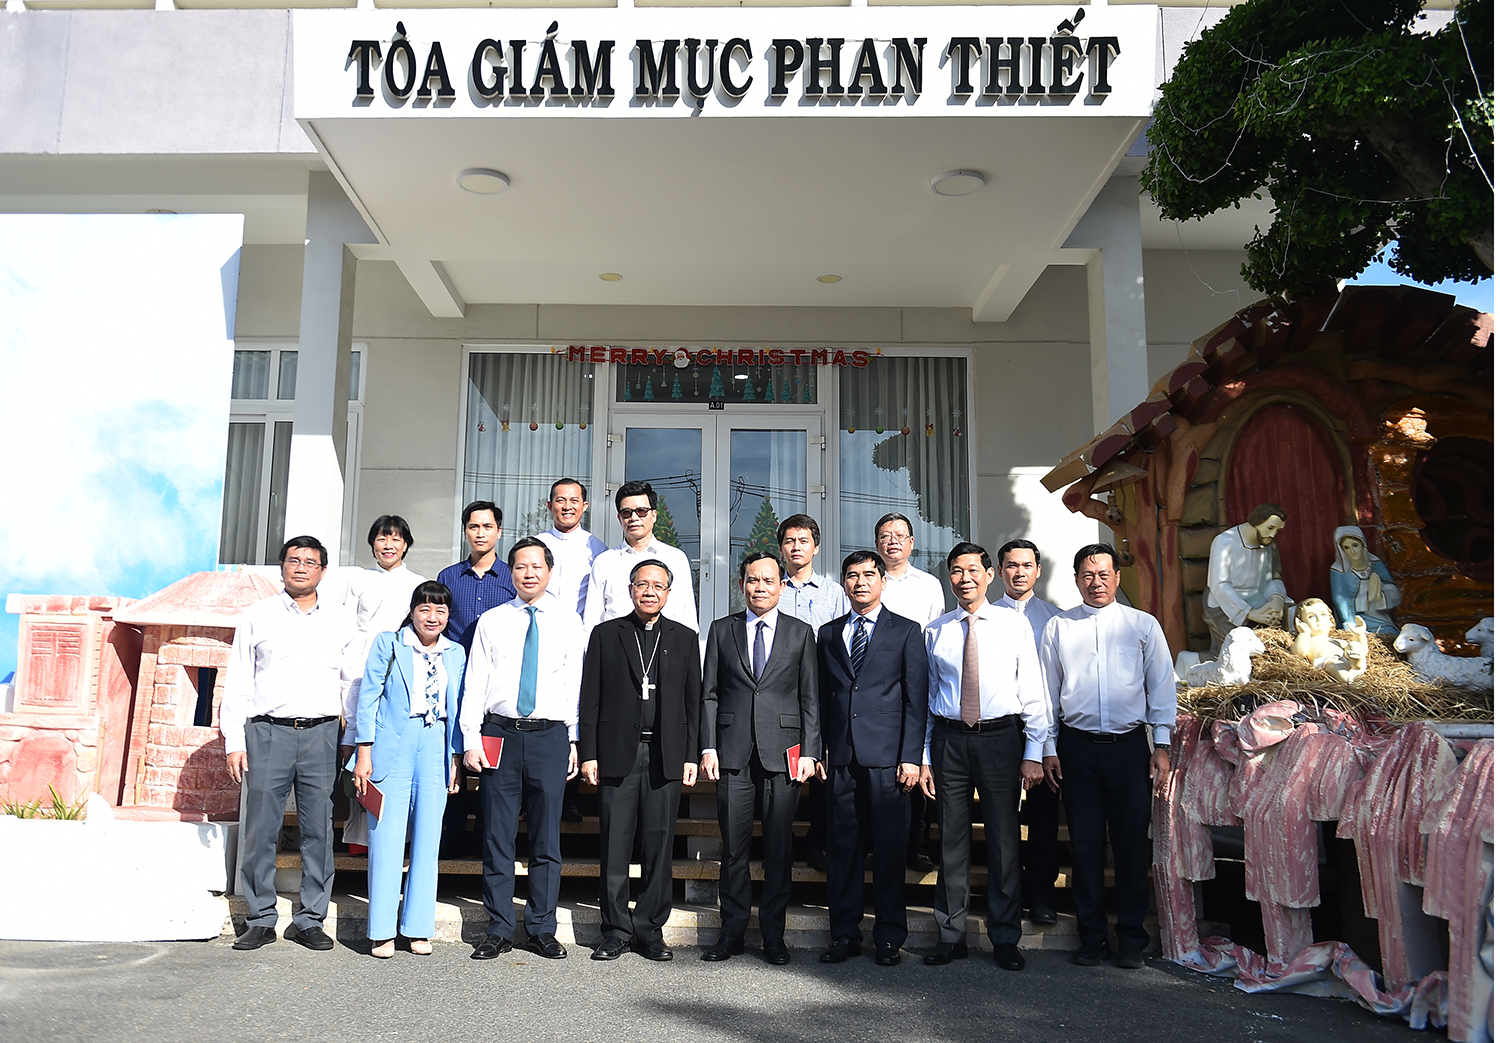 Giáo phận Phan Thiết được thành lập ngày 30/1/1975, tách ra từ Giáo phận Nha Trang - Ảnh: VGP/Hải Minh